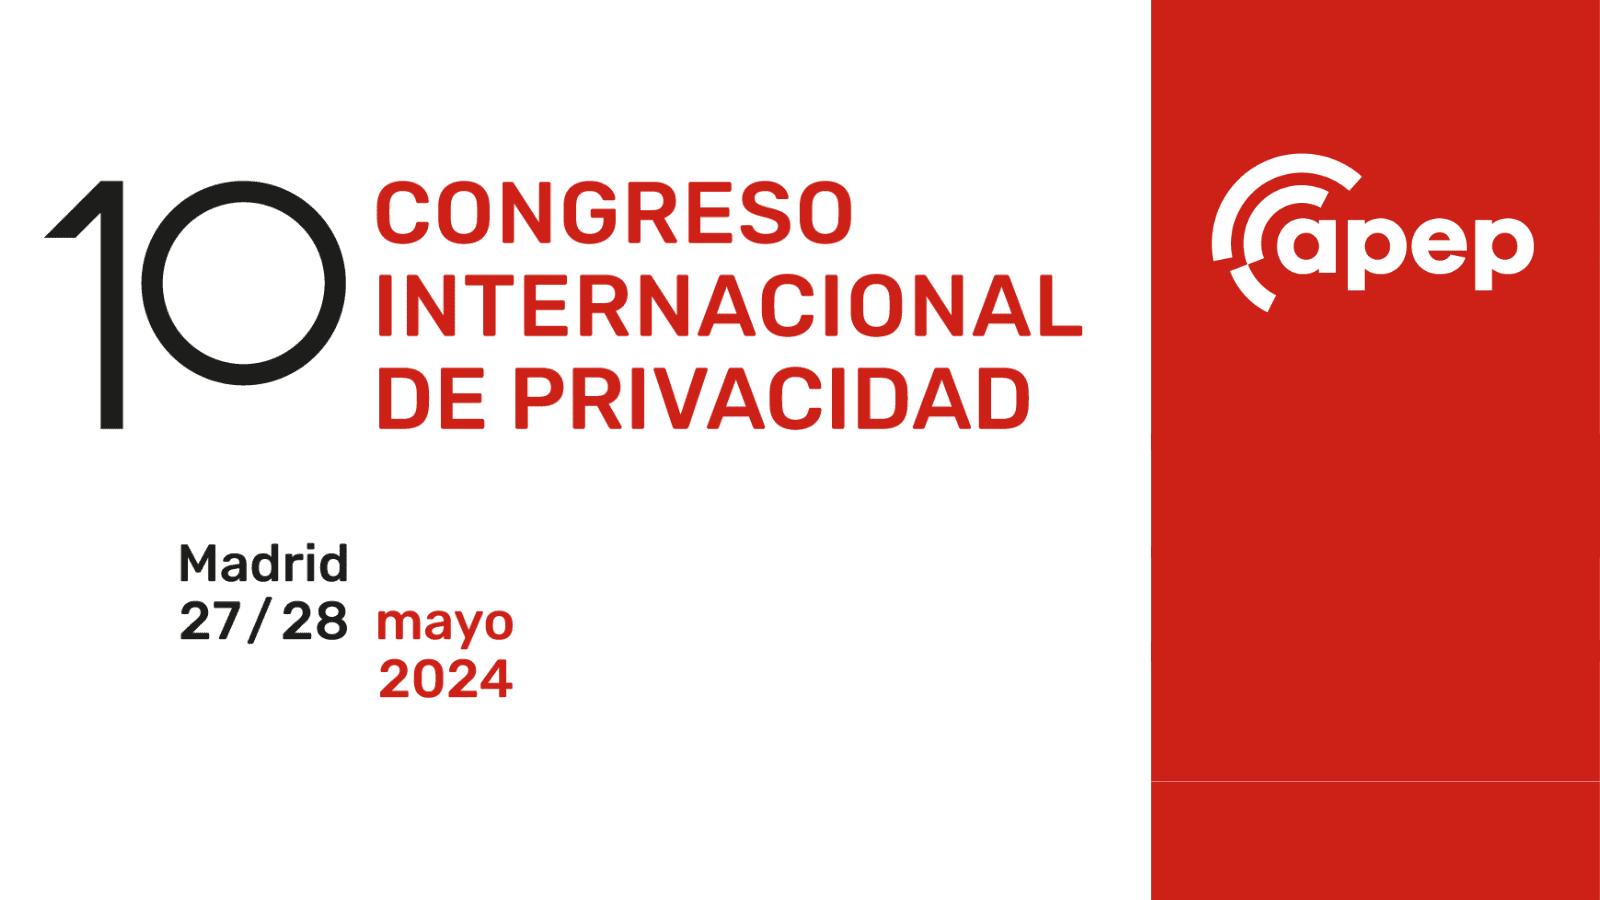 Entrada 10 Congreso Internacional de Privacidad APEP